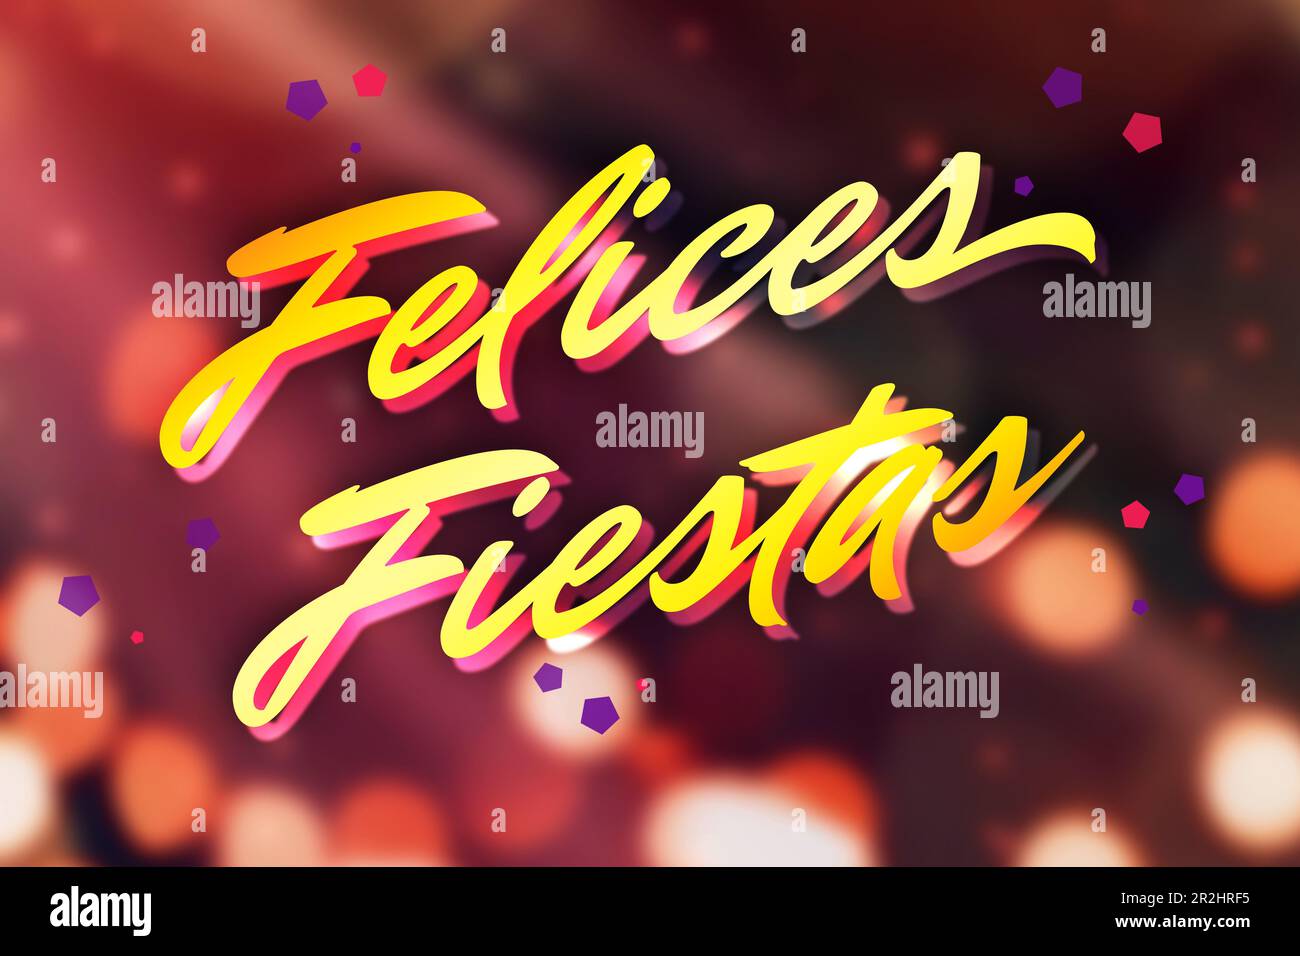 Felices Fiestas. Festliche Grußkarte mit frohen Feiertagswünschen auf Spanisch auf hellem Hintergrund Stockfoto